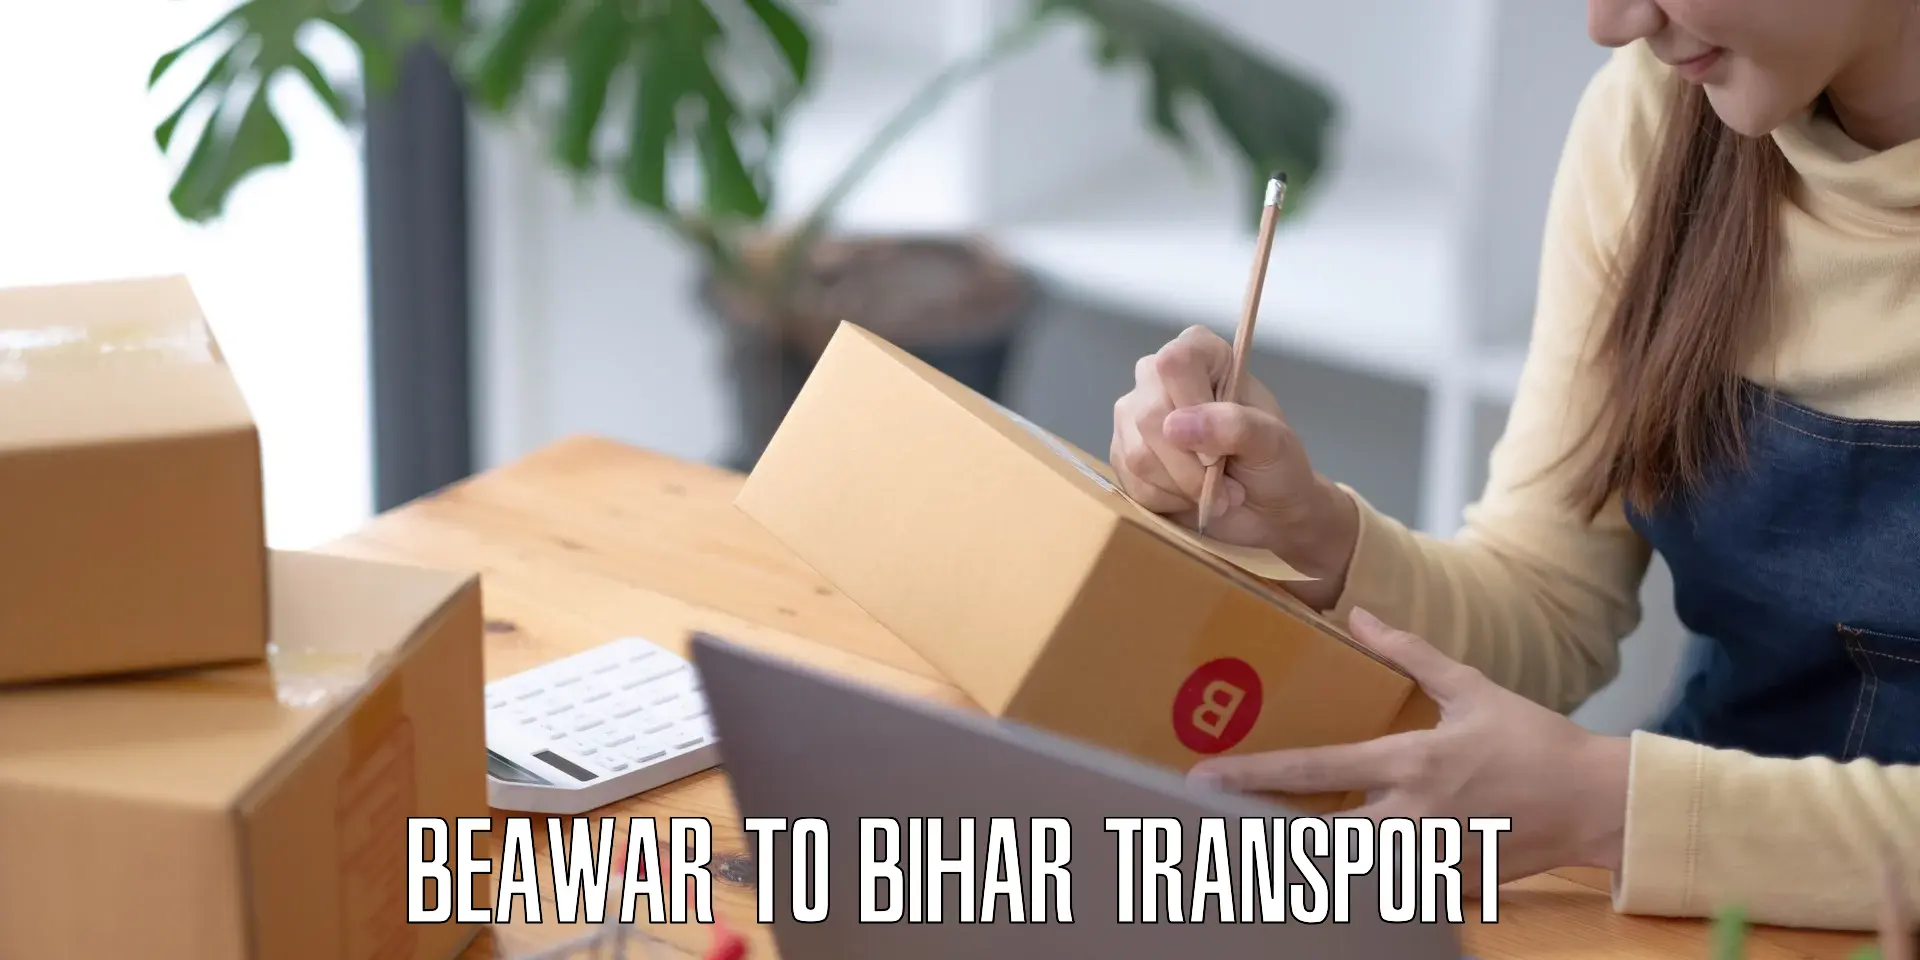 Transport in sharing in Beawar to Bankipore